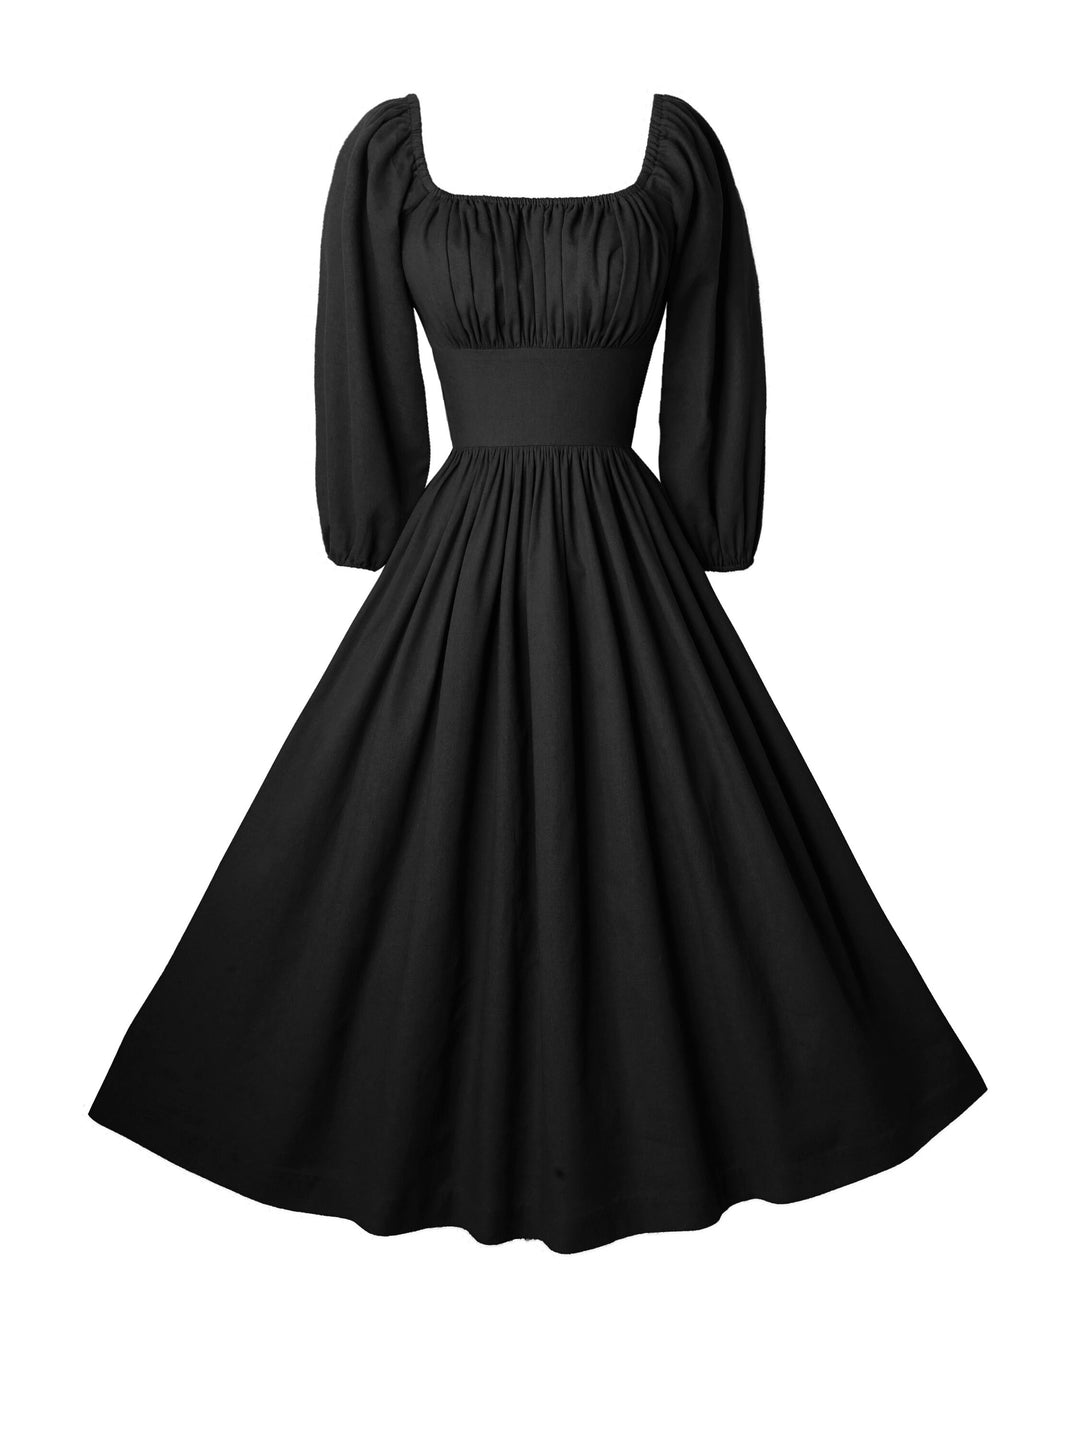 MTO - Sydney Dress in Midnight Black Linen